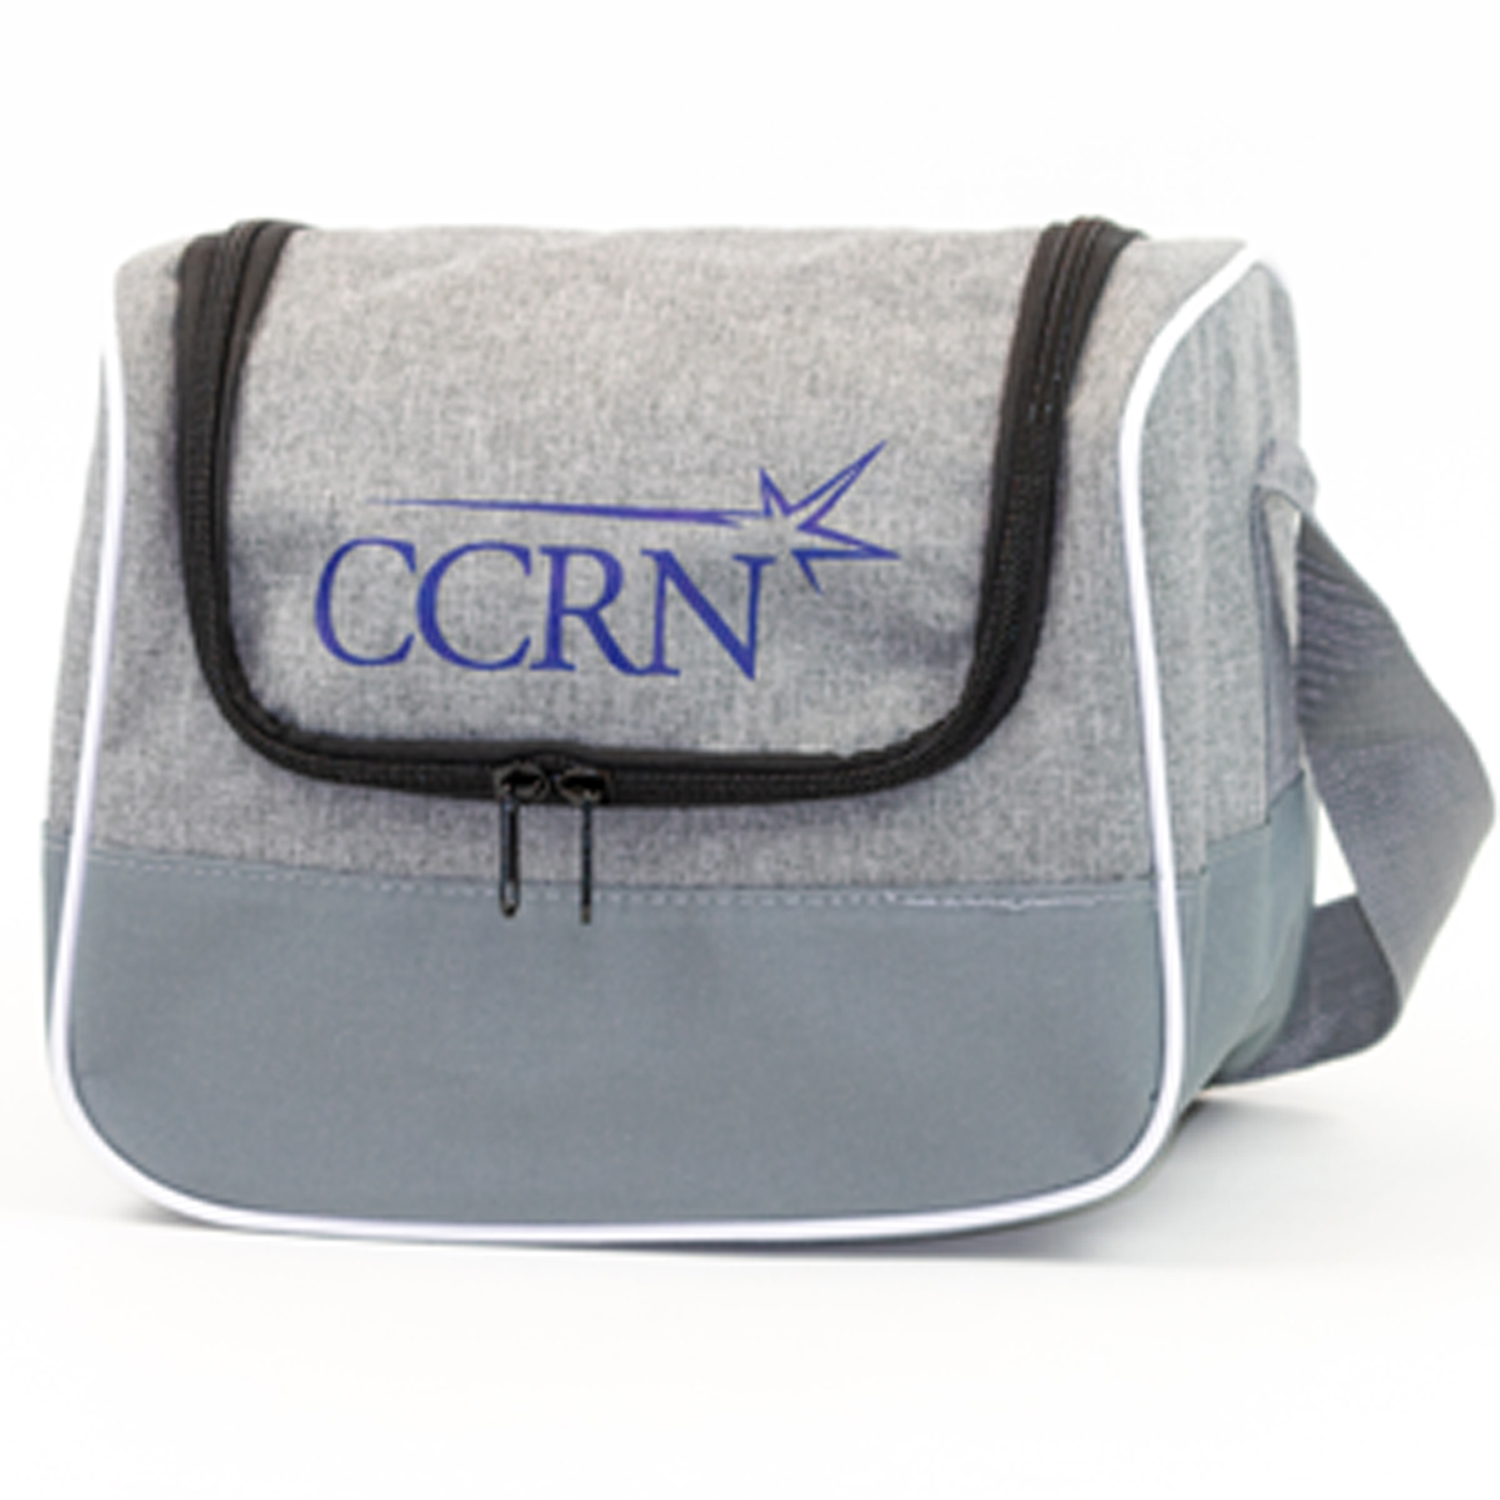 CCRN Lunch Cooler Bag